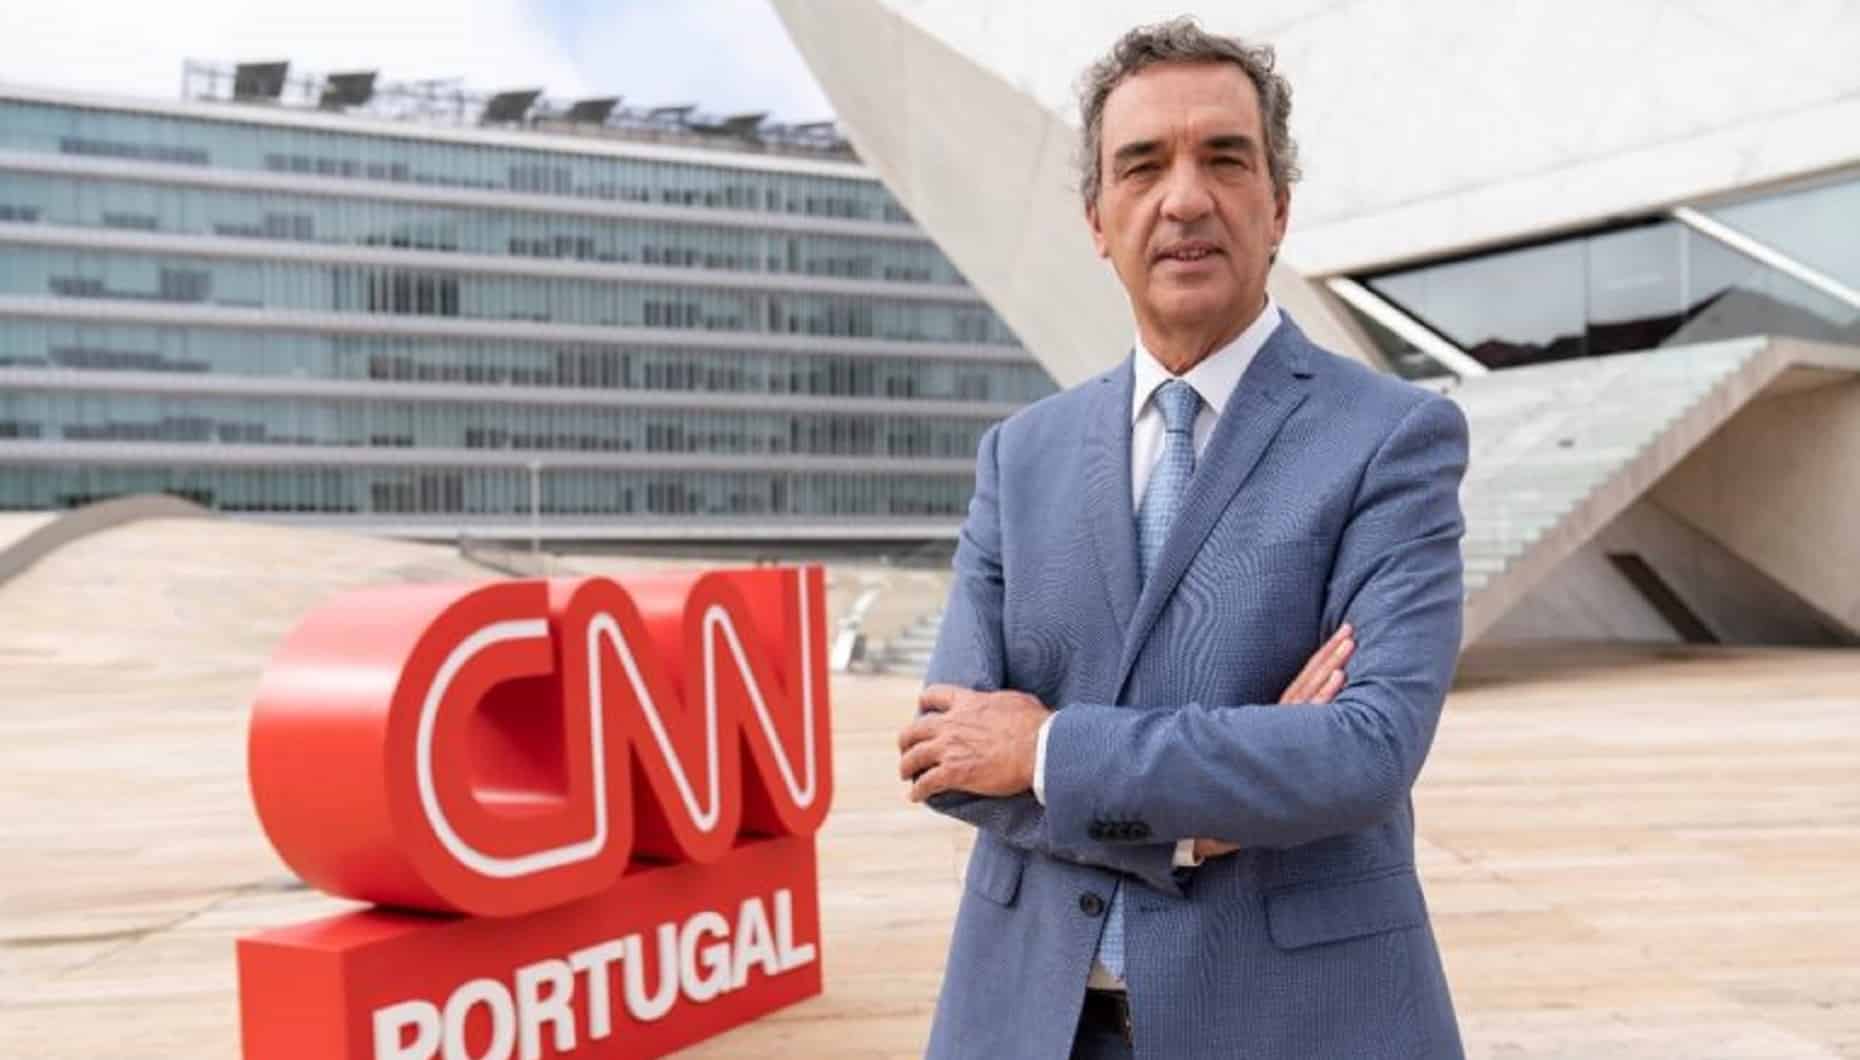 Estas são as melhores séries de TV de 2023 (até agora) - CNN Portugal